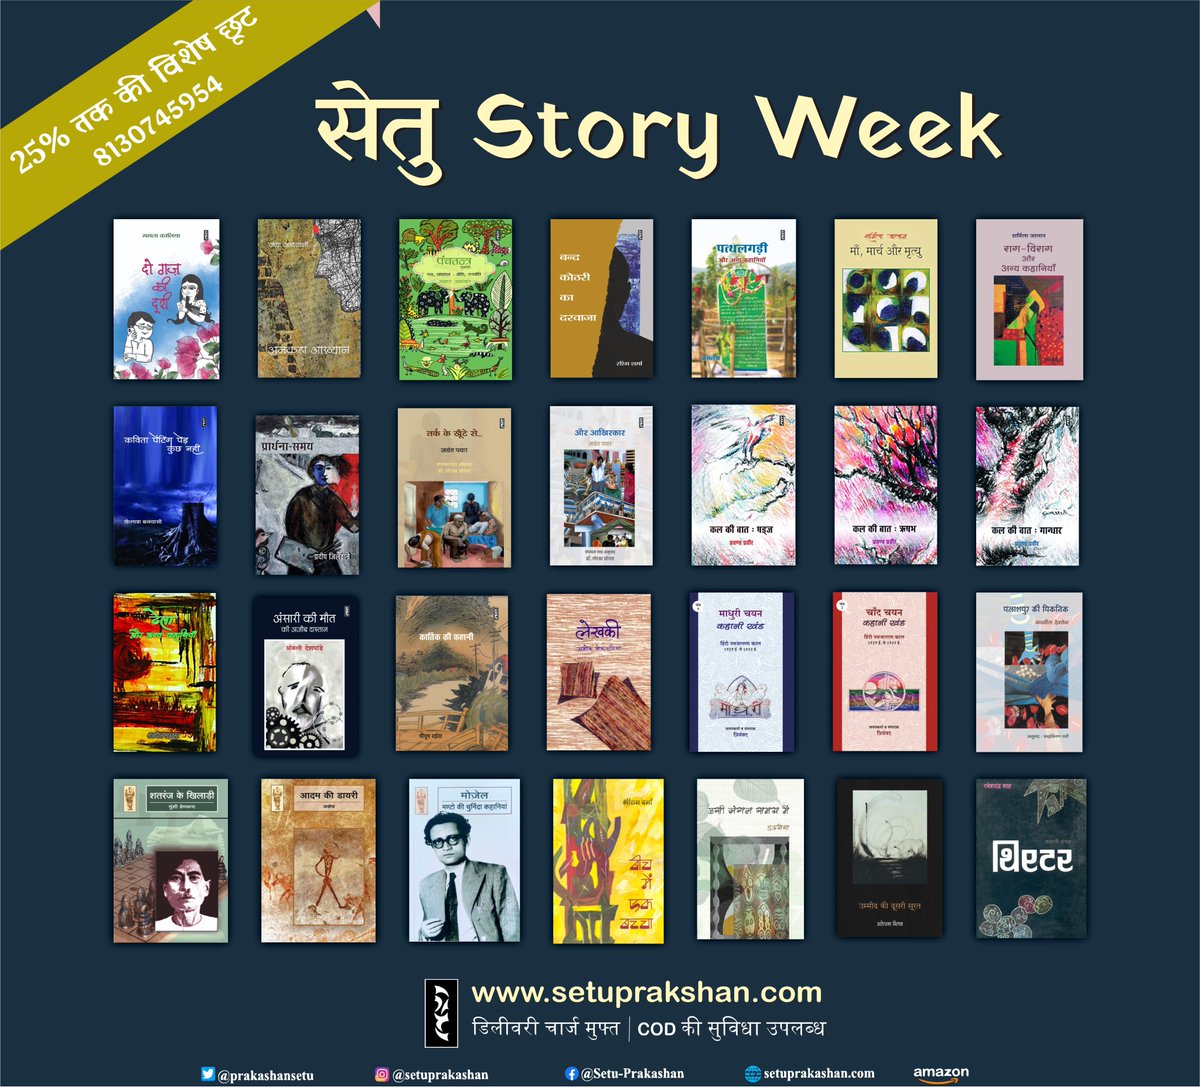 #सेतु_story_week   #सेतु_कहानी   #विशेष_छूट 

आपके पसंदीदा कहानी संग्रहों पर 23 जुलाई 2022 तक 25% की विशेष छूट...

अपना पसंदीदा संग्रह बुक कीजिए...
setuprakashan.com

#सेतु_प्रकाशन_समूह #books #hindisahitya #newoffer #combo_बुक्स #combodeals #trending #onlineshopping